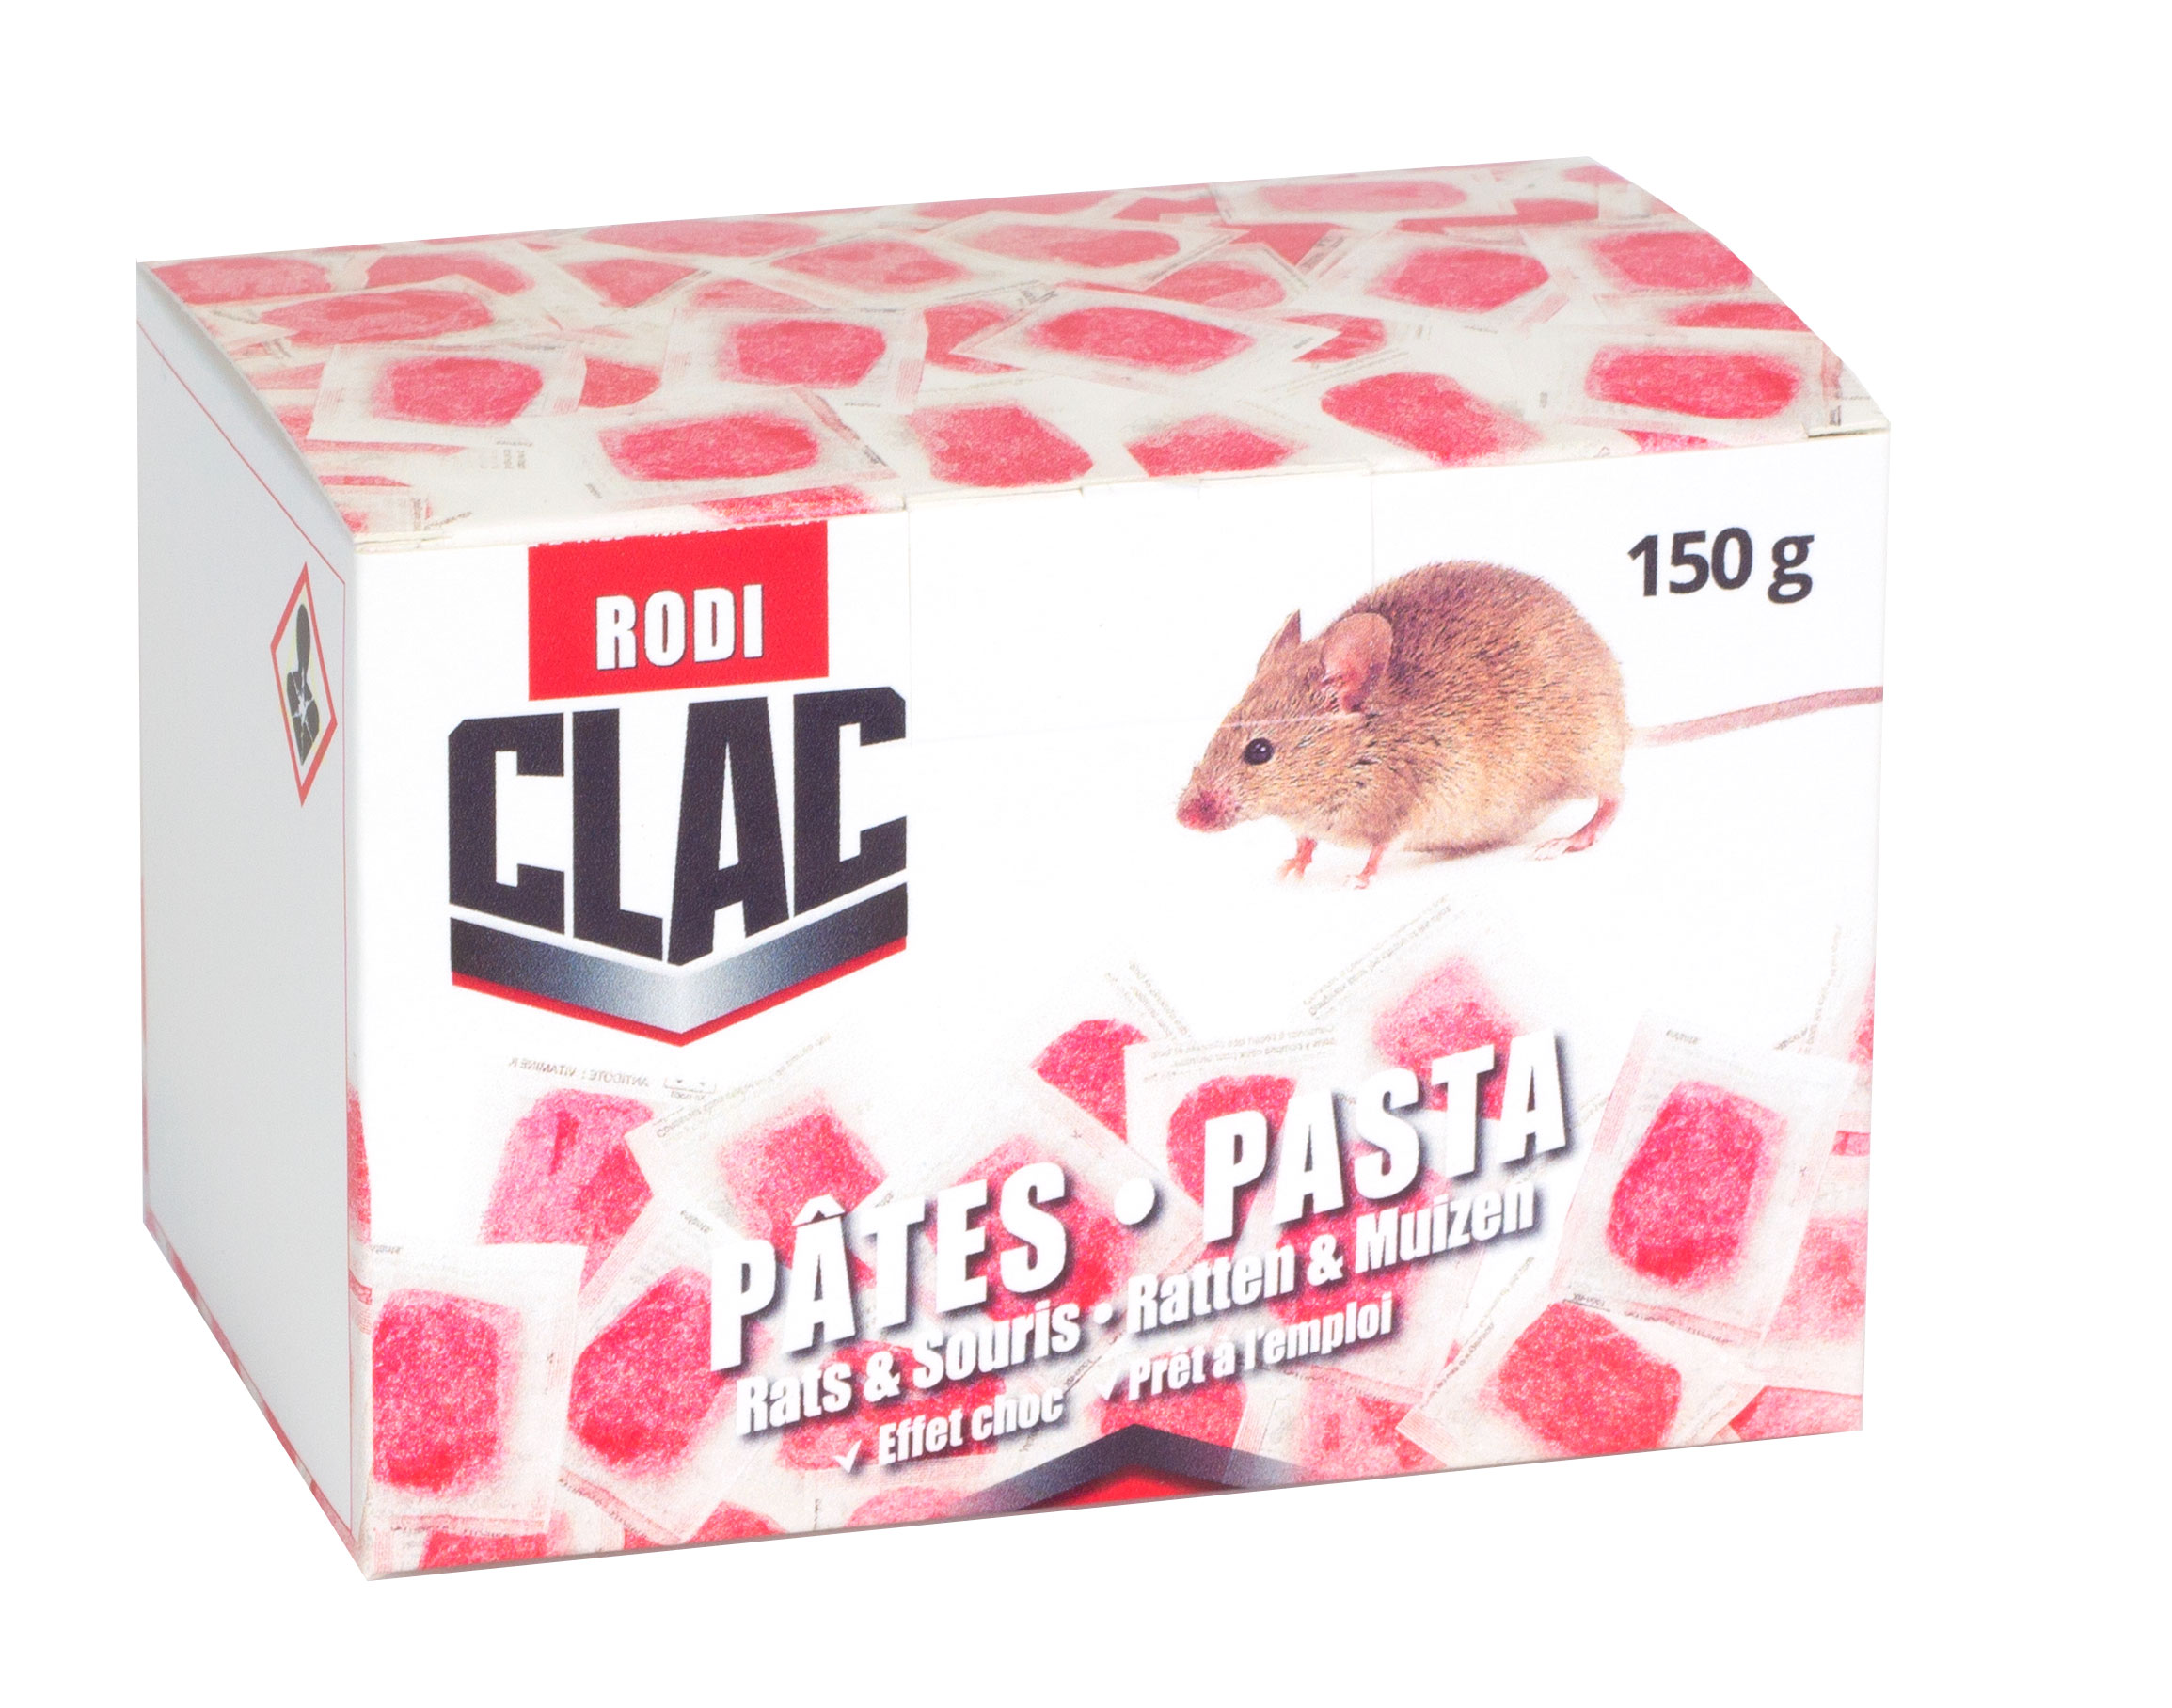 Blocs paraffinés rats et souris (300 g) - Ratu'Clac - Monvoisin